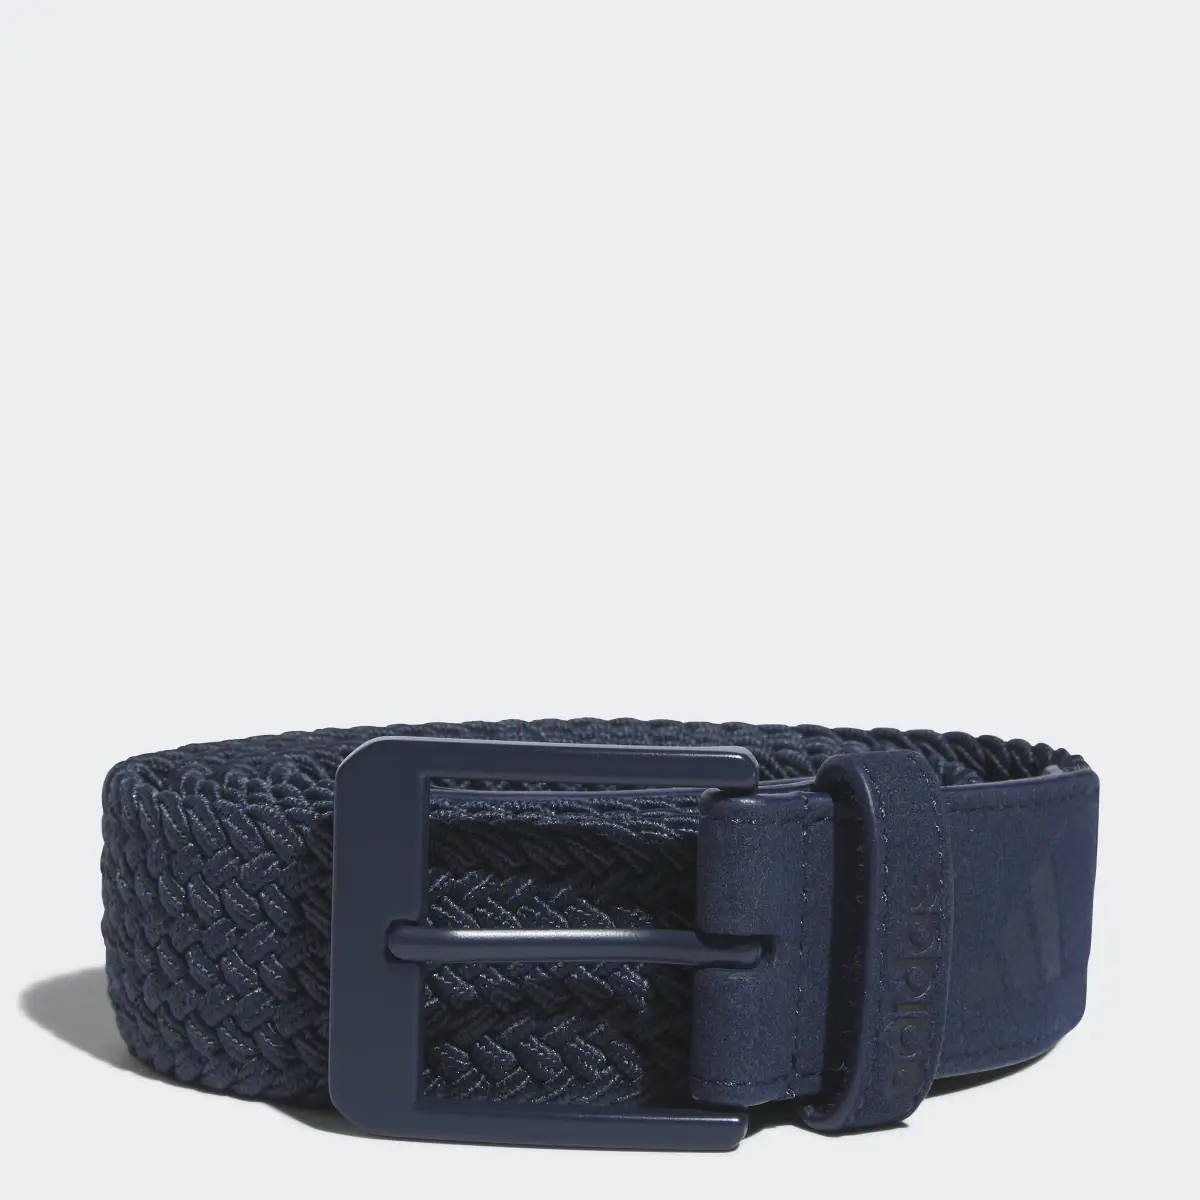 Adidas Braided Stretch Belt. 1